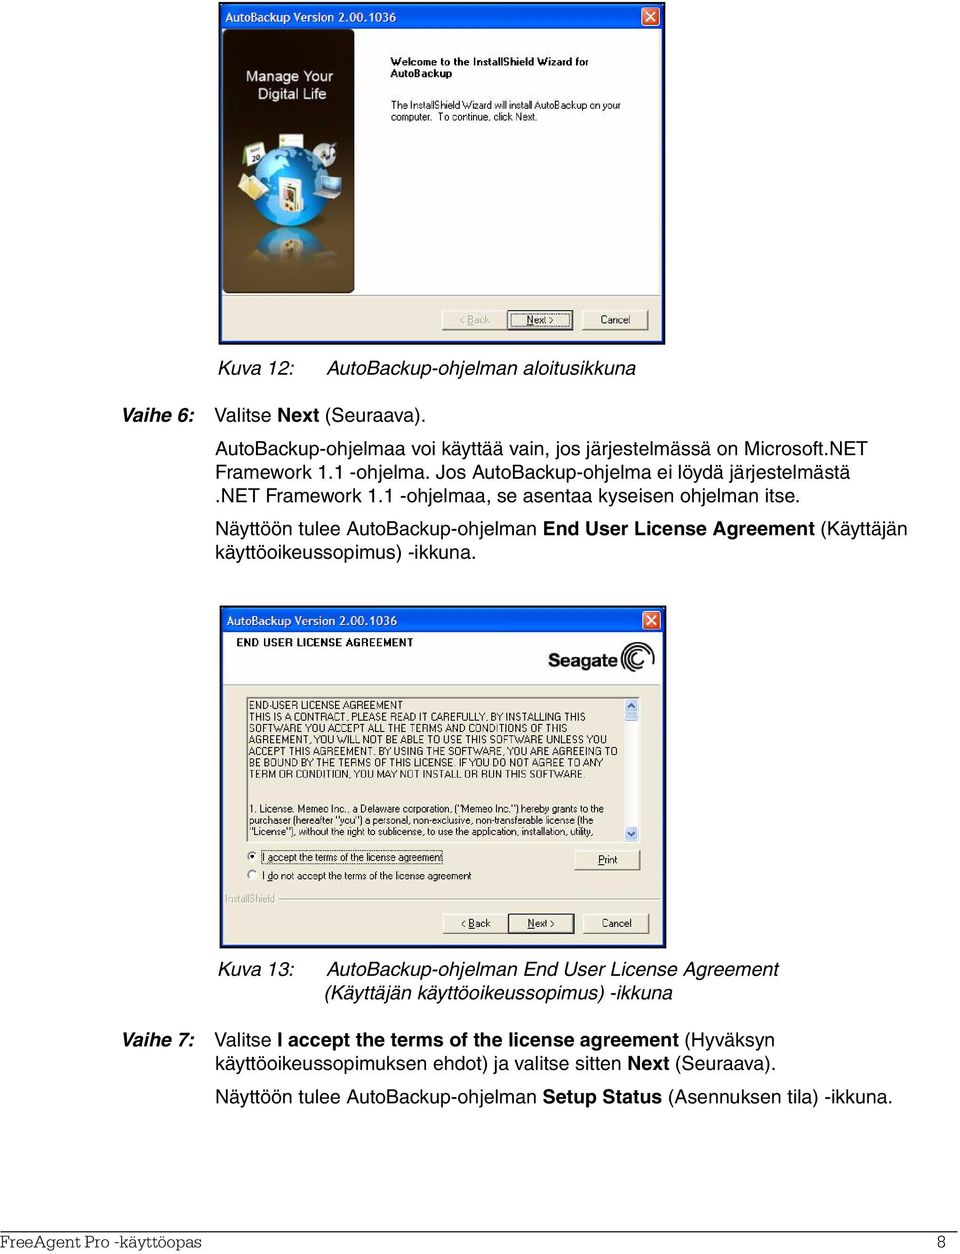 Näyttöön tulee AutoBackup-ohjelman End User License Agreement (Käyttäjän käyttöoikeussopimus) -ikkuna.